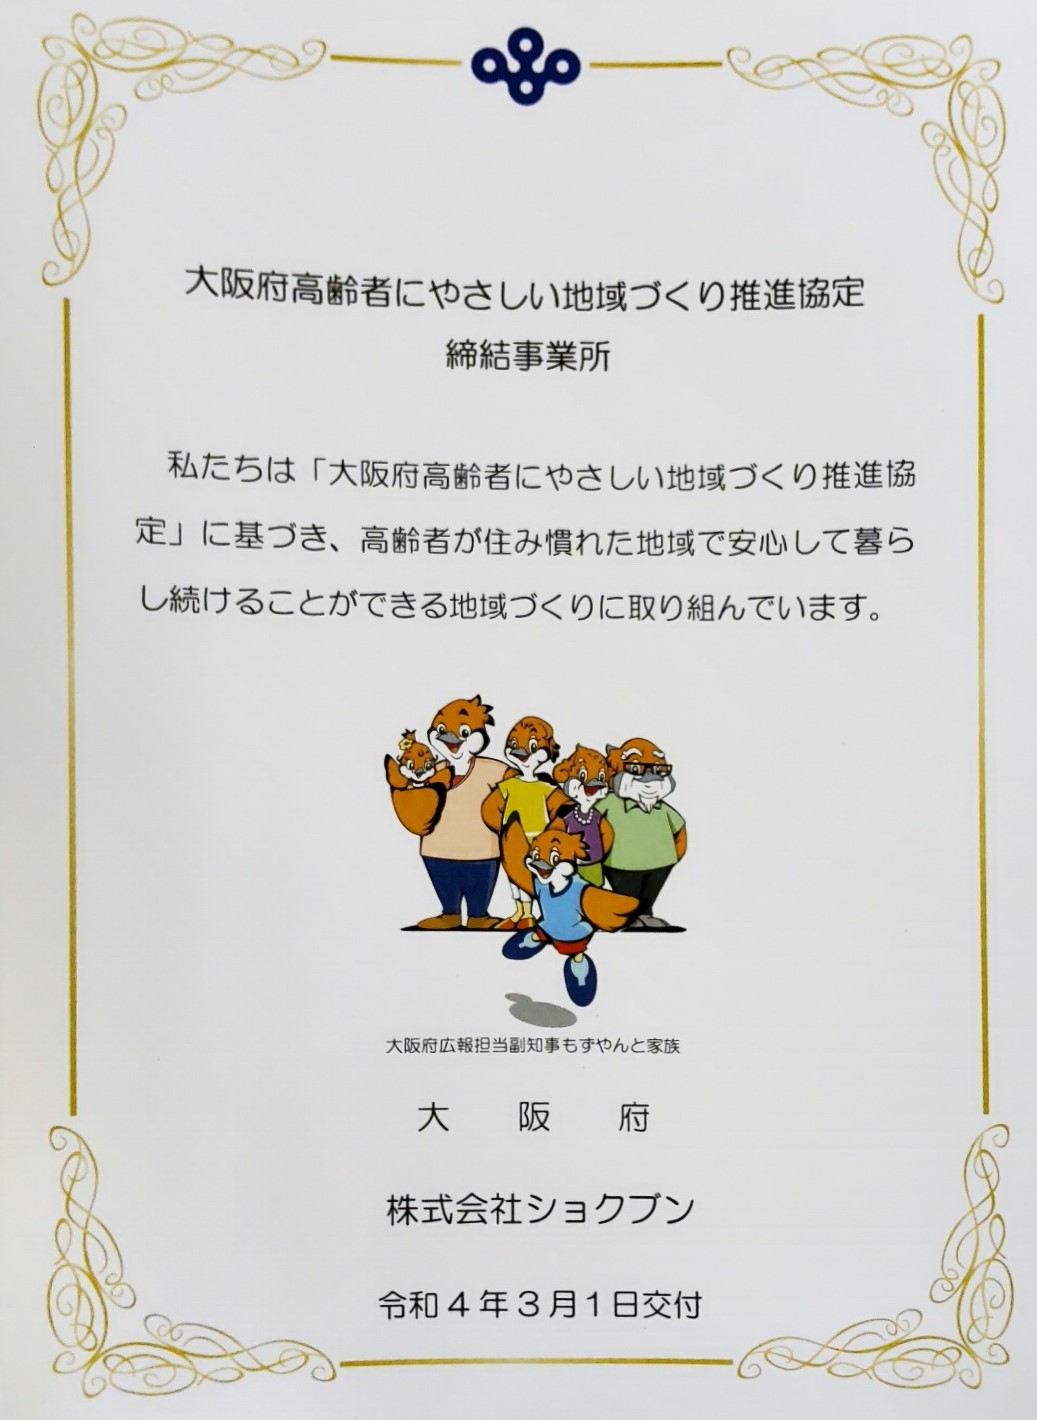 【お知らせ】大阪府とショクブンは「高齢者にやさしい地域づくり推進協定」を締結しました